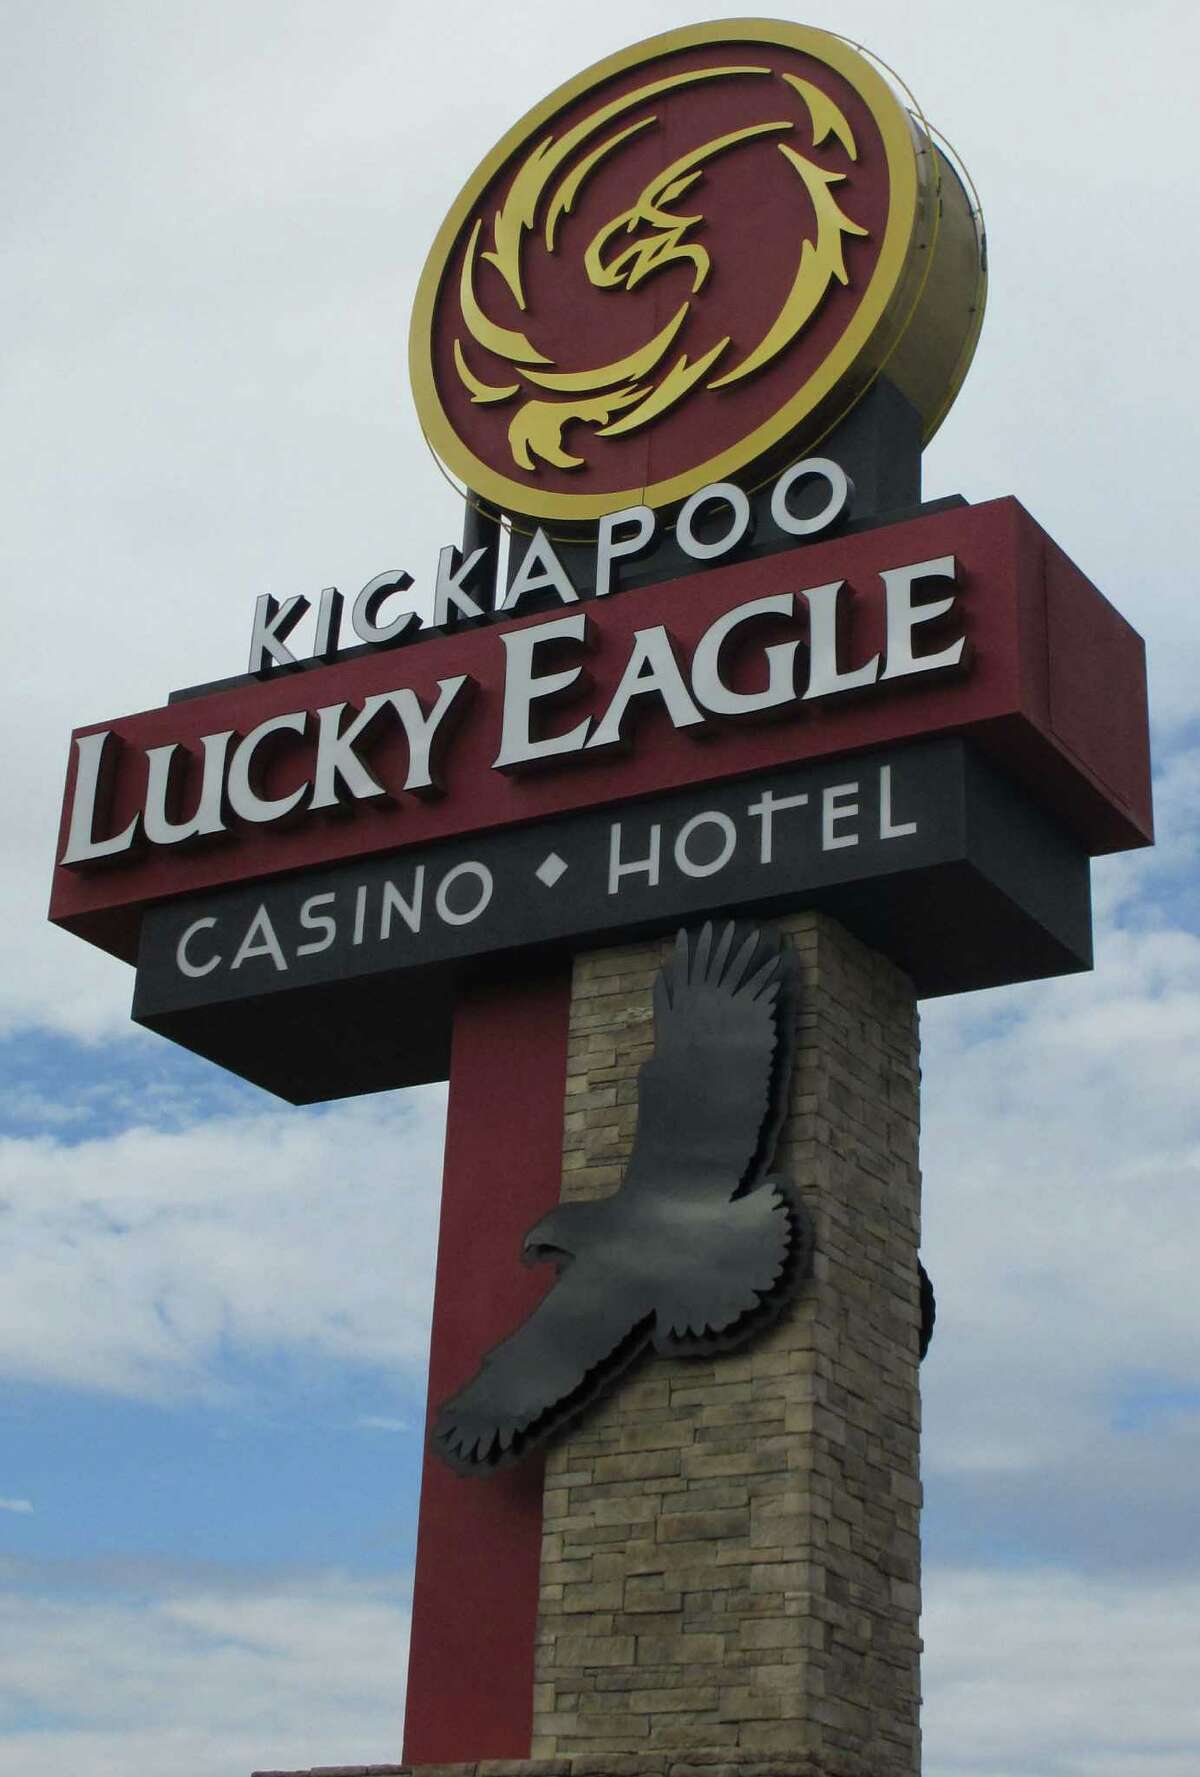 kickapoo casino texas